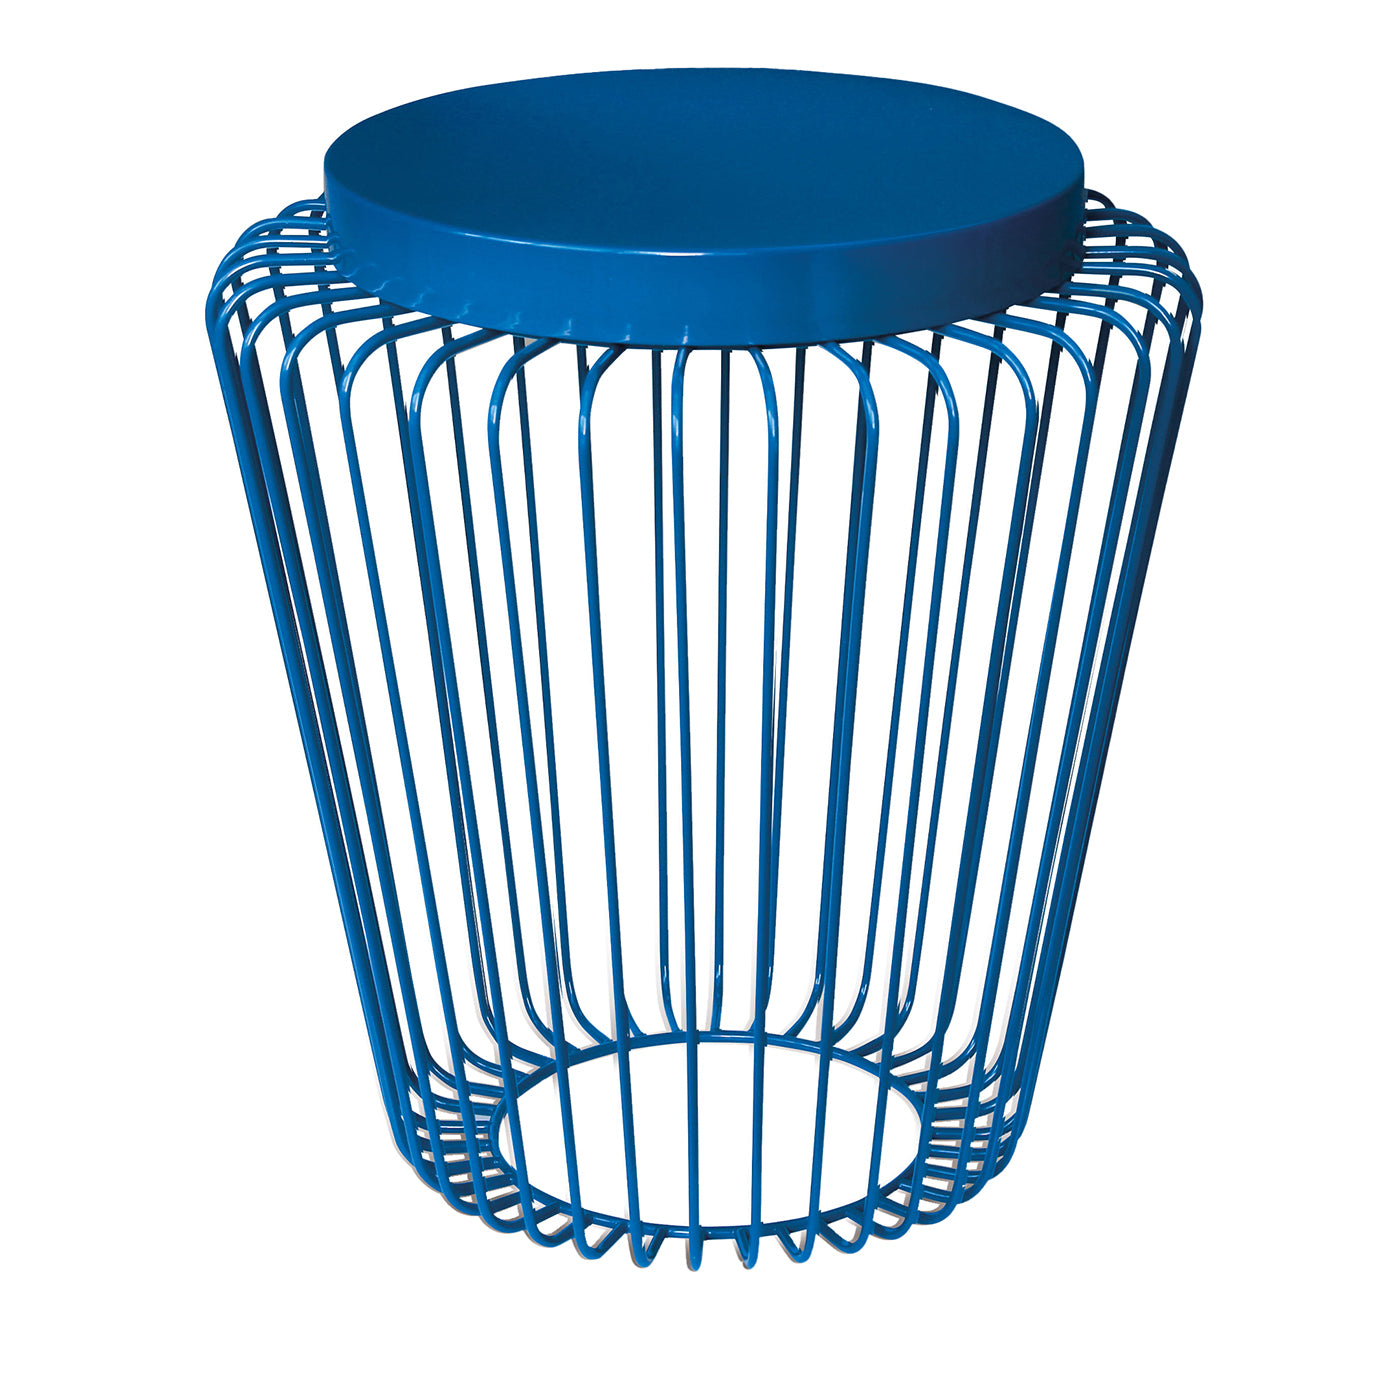 Farol azul Cage de Stefano Tabarin - Vista principal